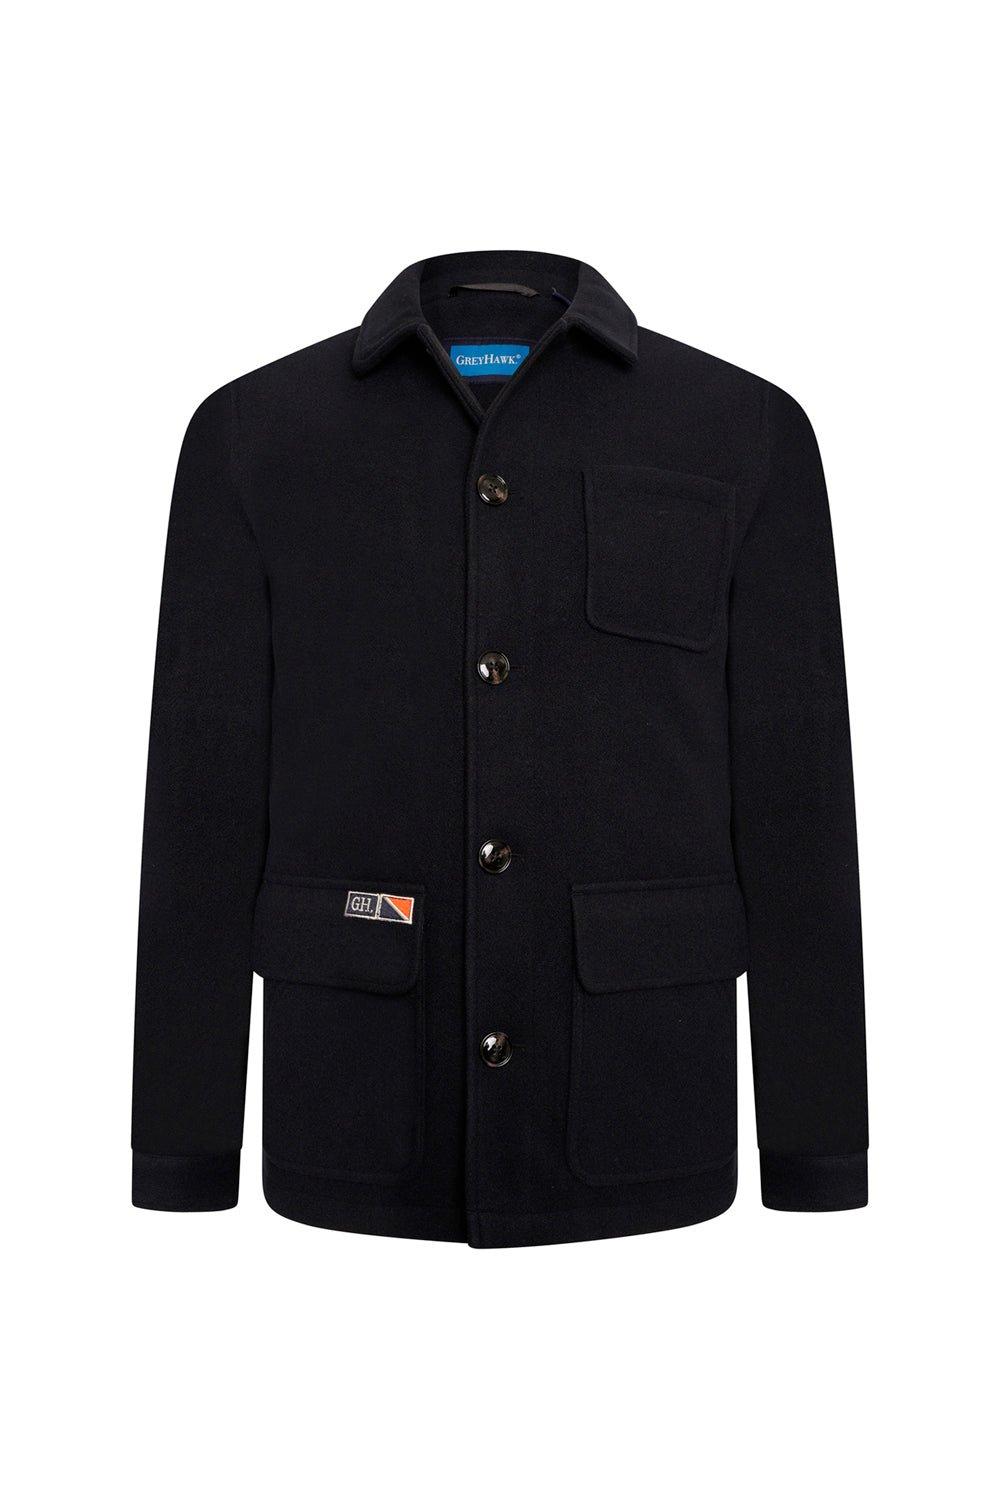 Экстра-высокая куртка в стиле рабочей одежды серого цвета Hawk Grey Hawk, темно-синий